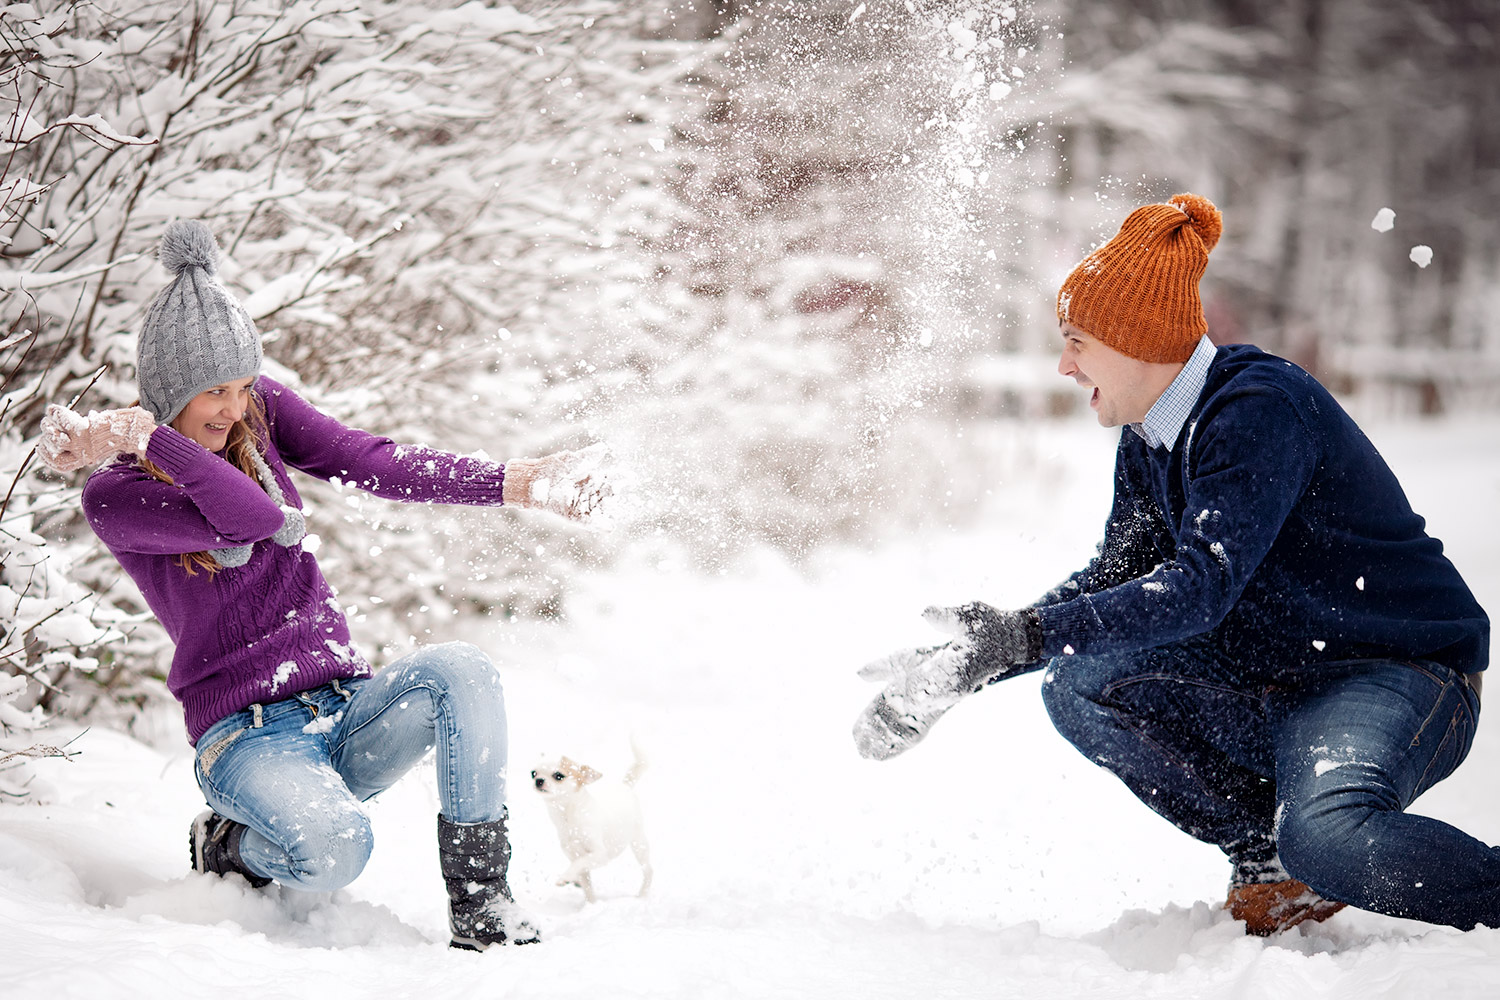 Снежки по взрослому. Игра в снежки. Зима радость. Люди зимой. Фотосессия зимой на улице.